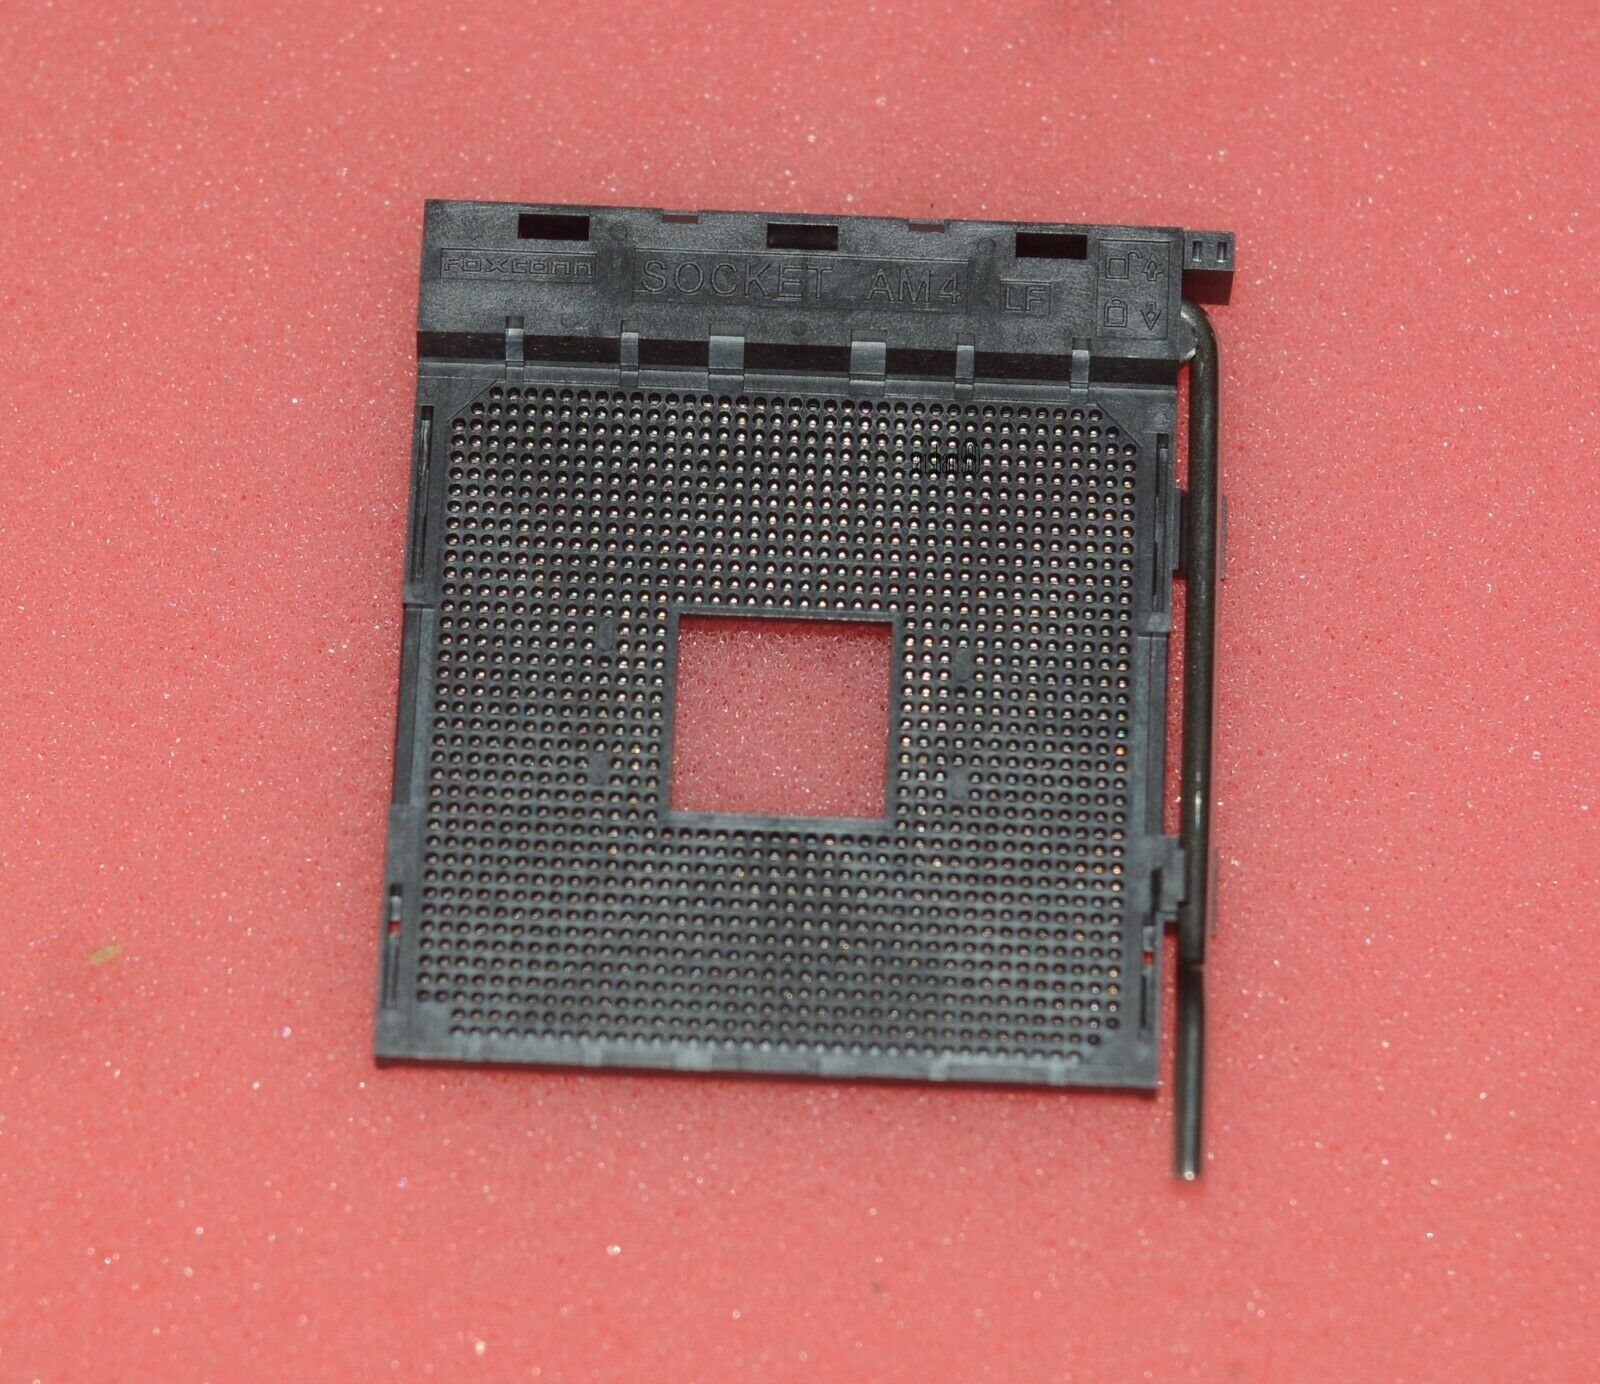 Original Foxconn LGA AM4 Motherboard Mainboard Soldering BGA CPU Socket Holder